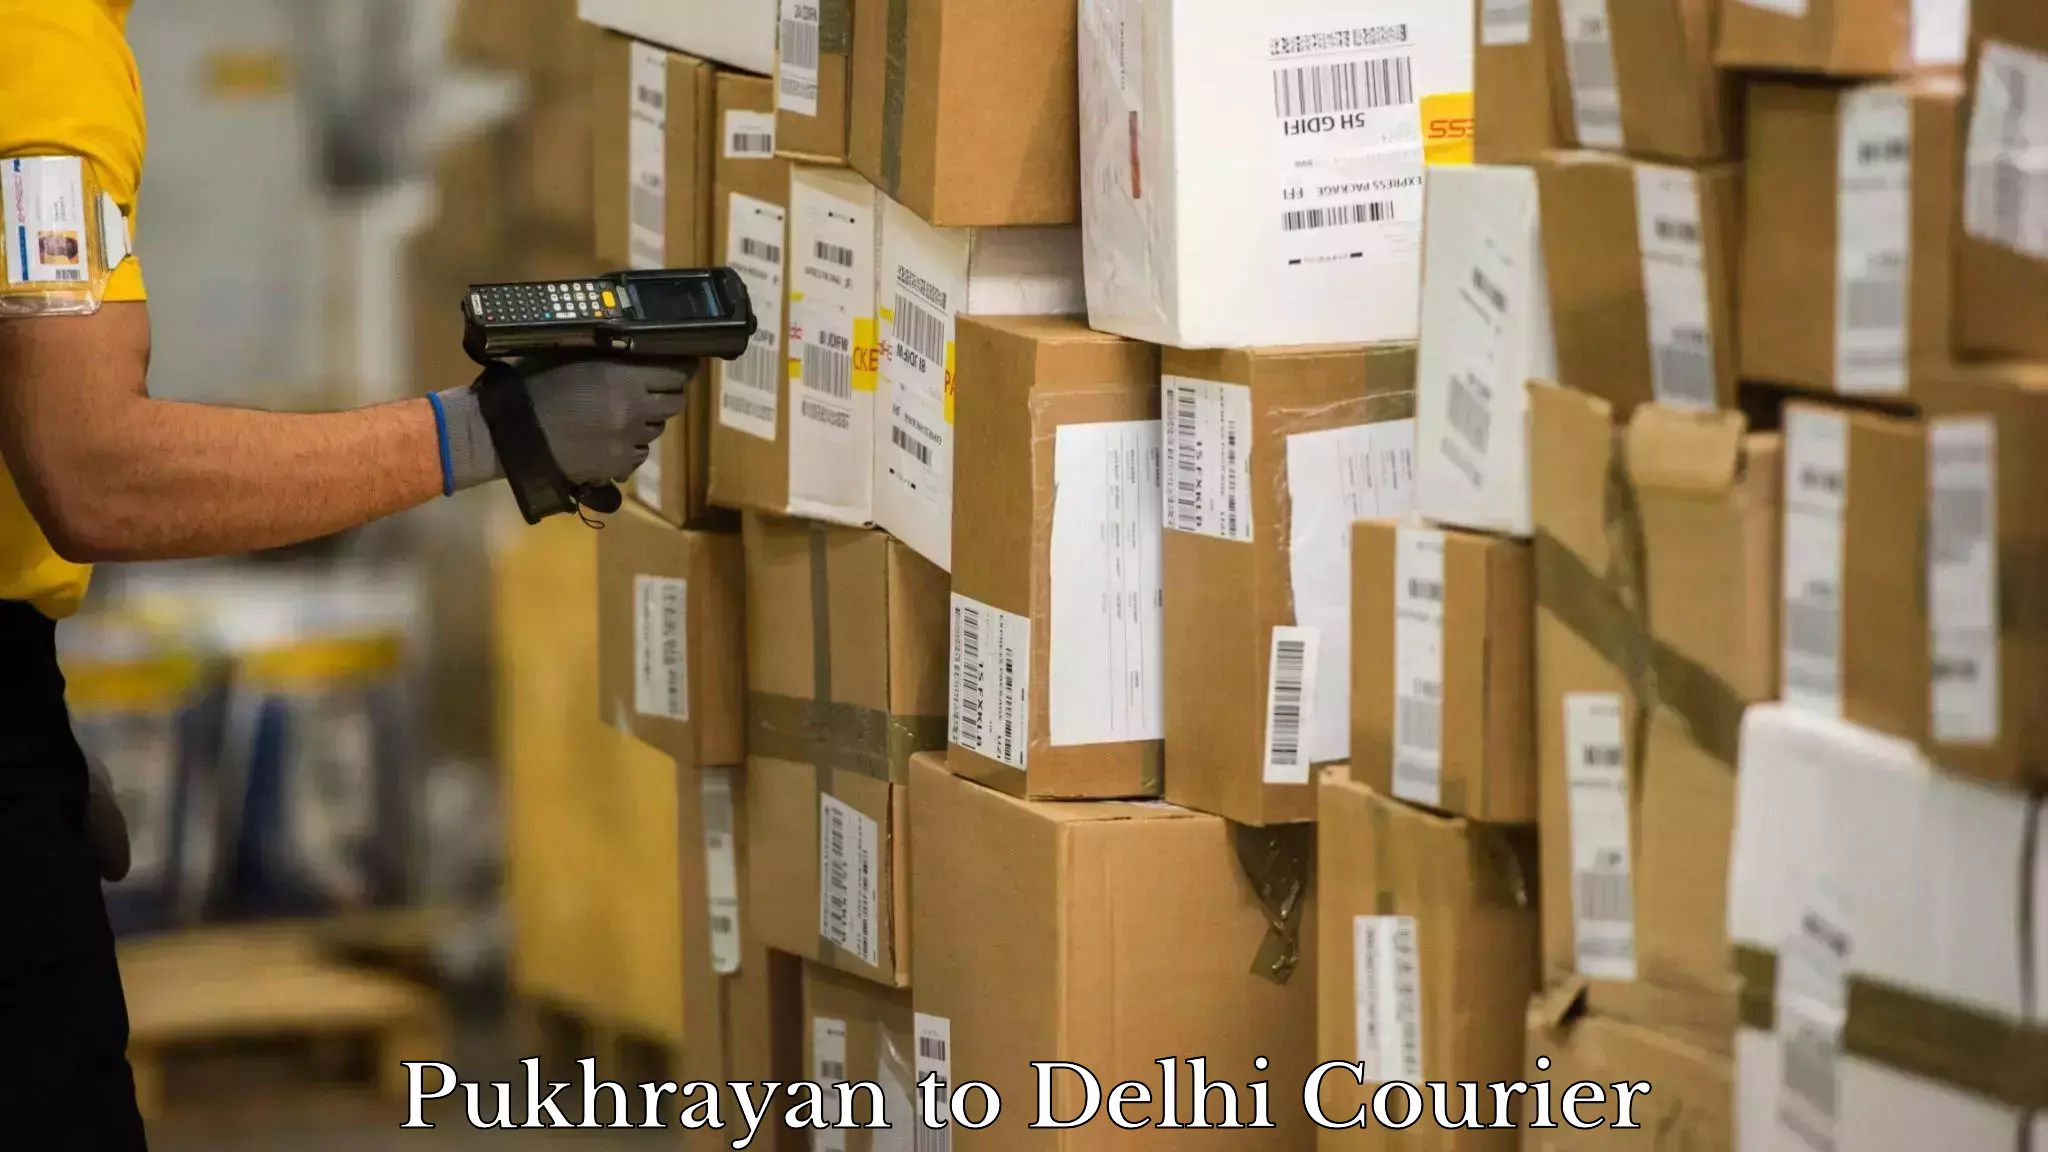 Doorstep delivery service Pukhrayan to Delhi